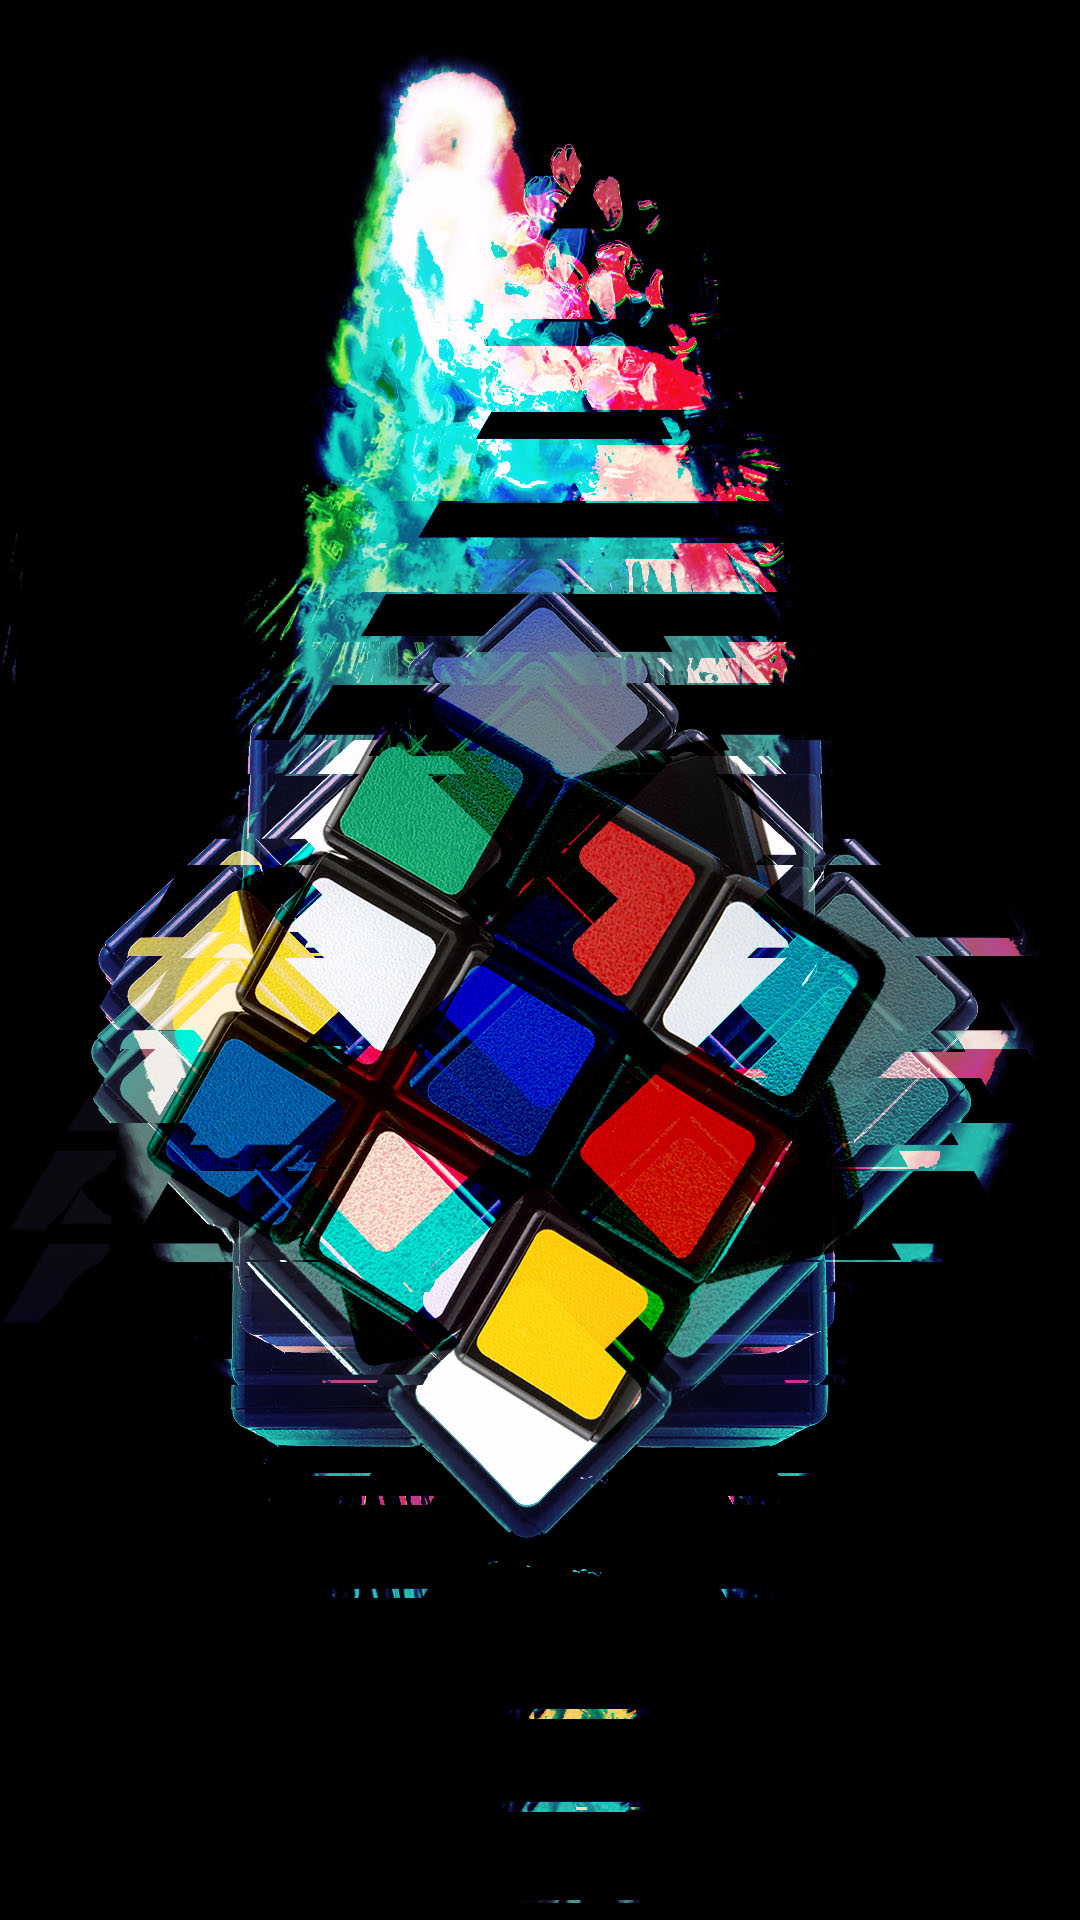 Rubik Cube by Pceudoart on DeviantArt